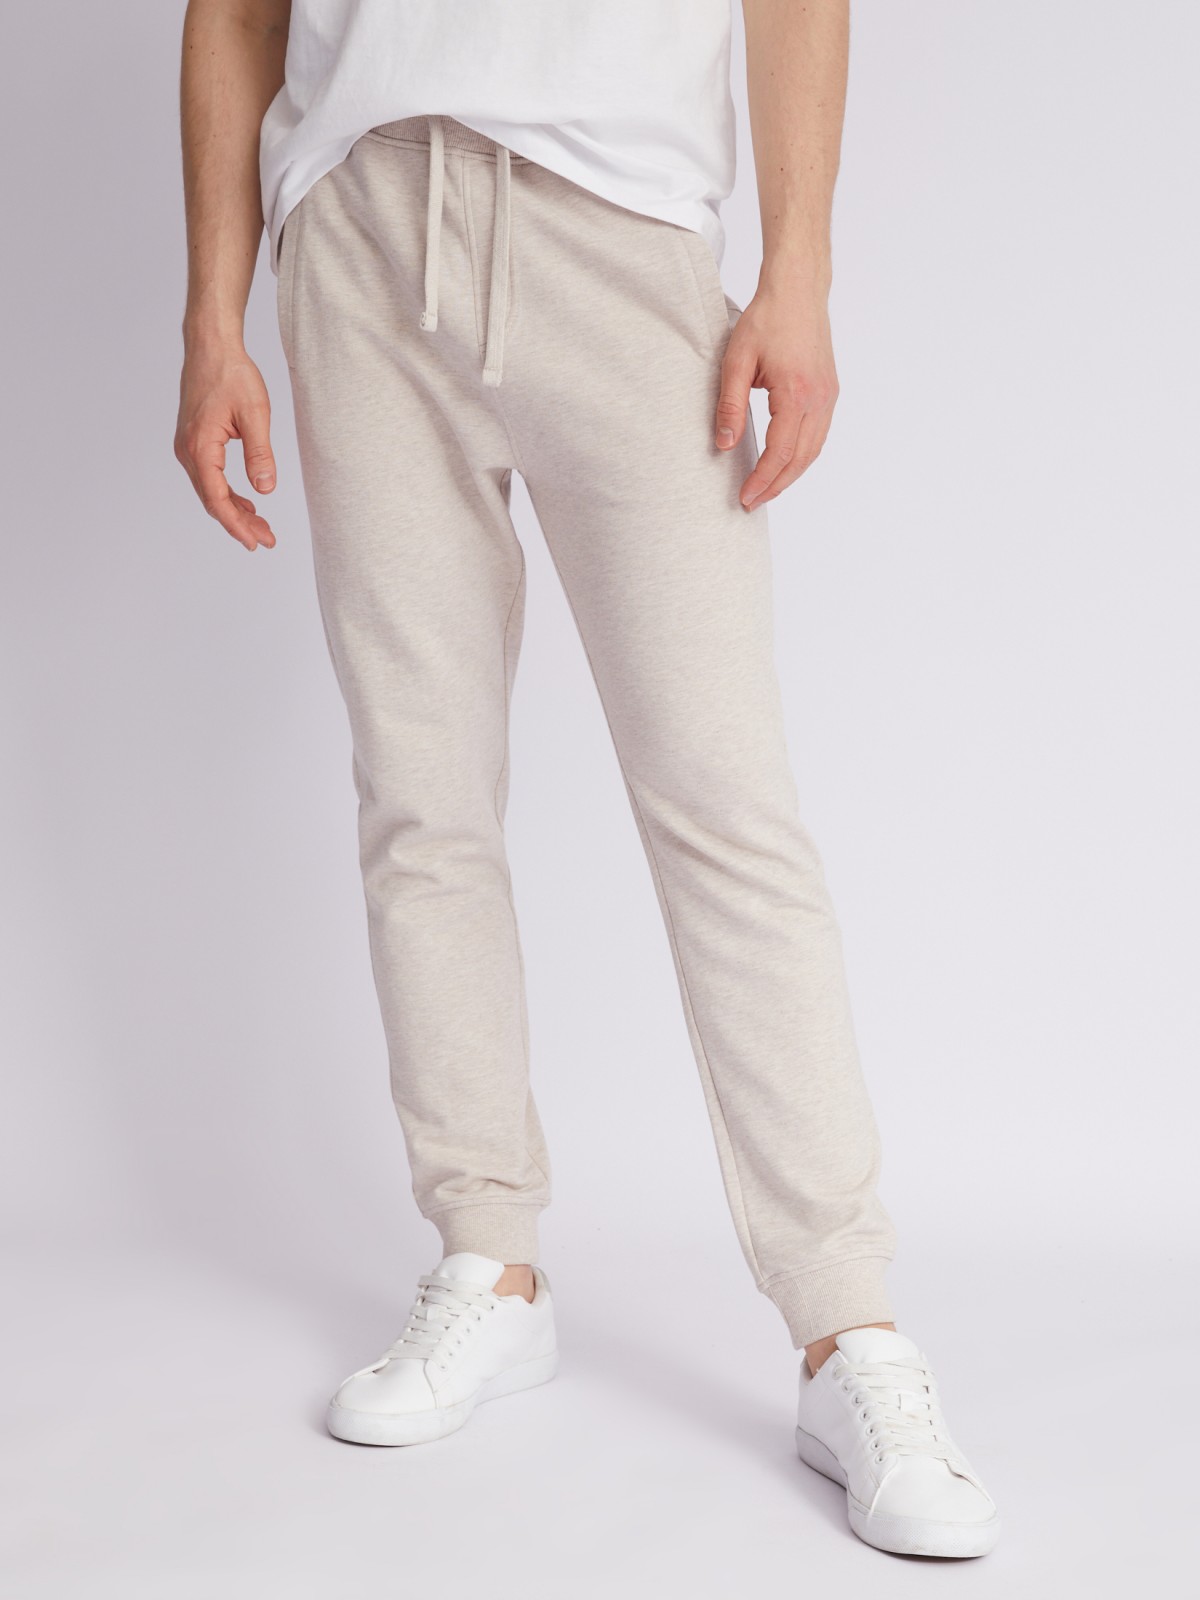 Трикотажные брюки-джоггеры zolla 21321761U042, цвет бежевый, размер XS - фото 2